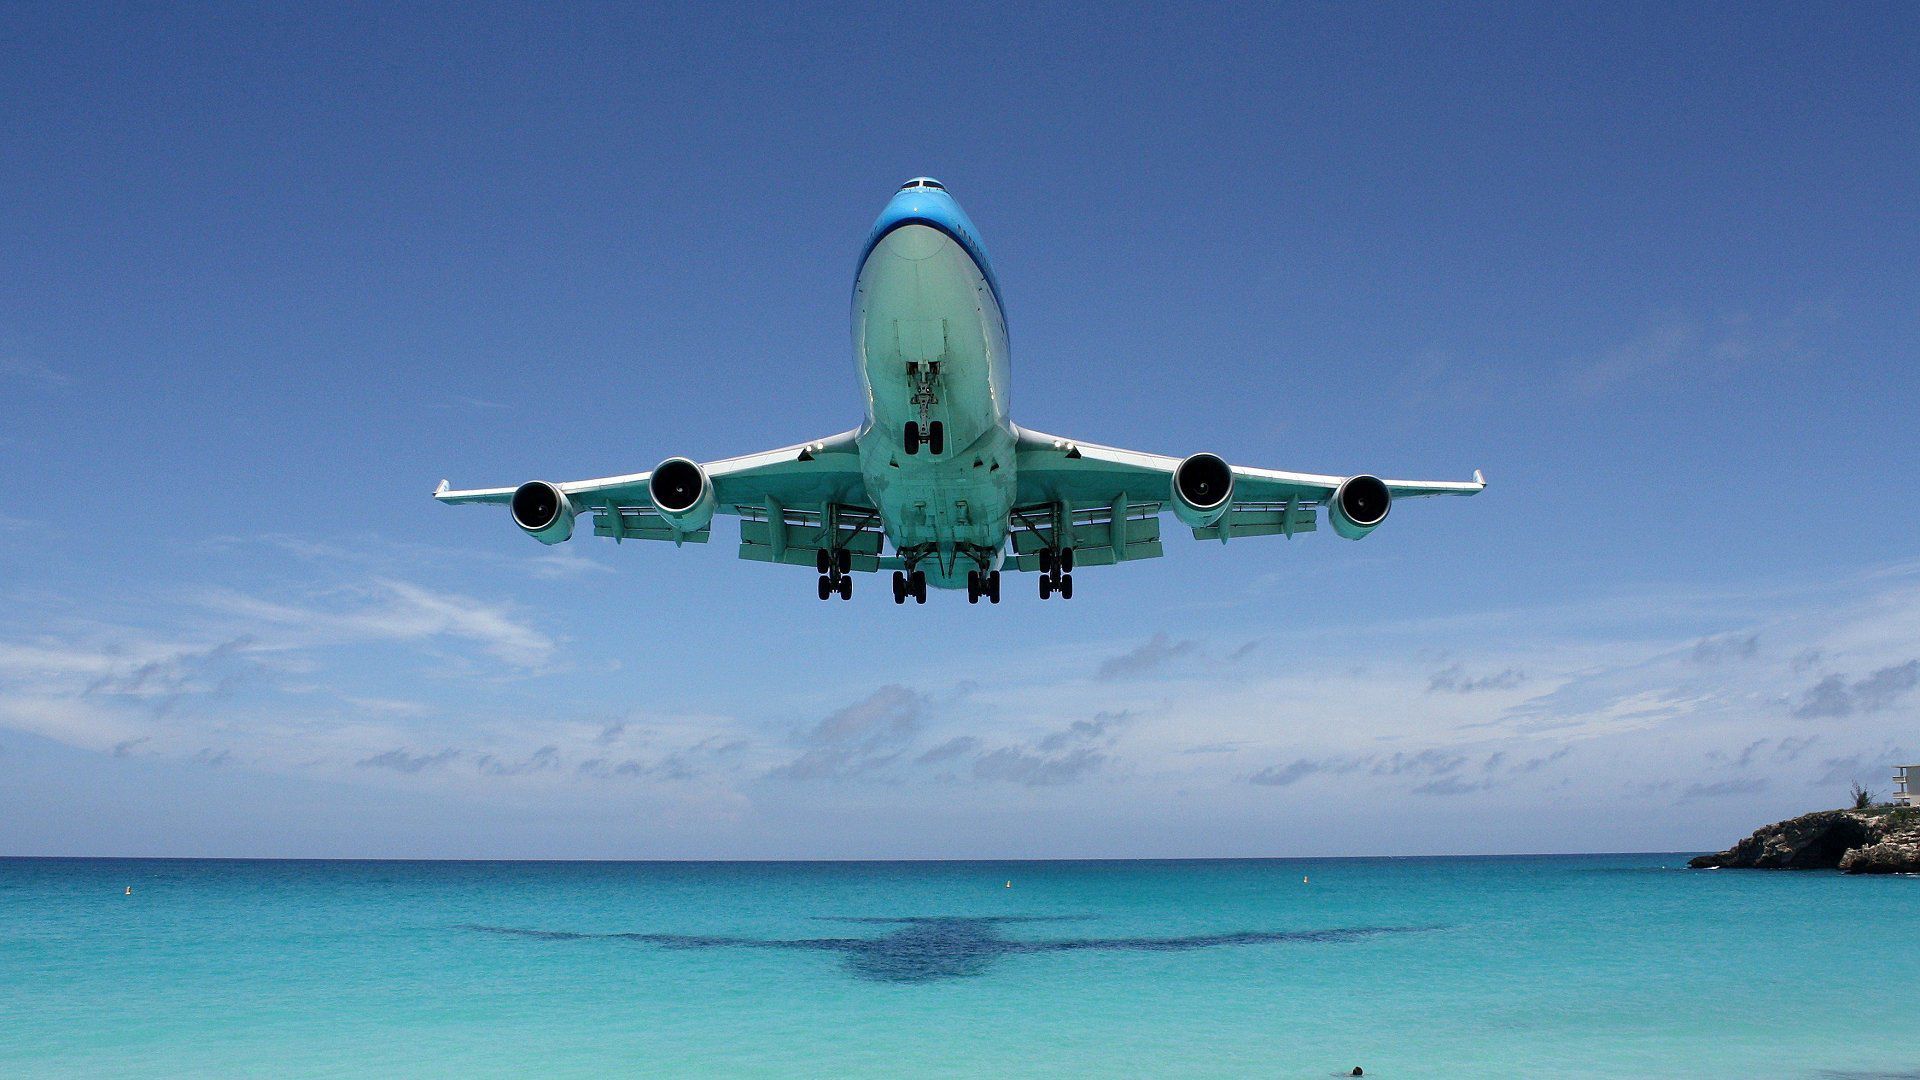 Популярные заставки и фоны Boeing 747 на компьютер